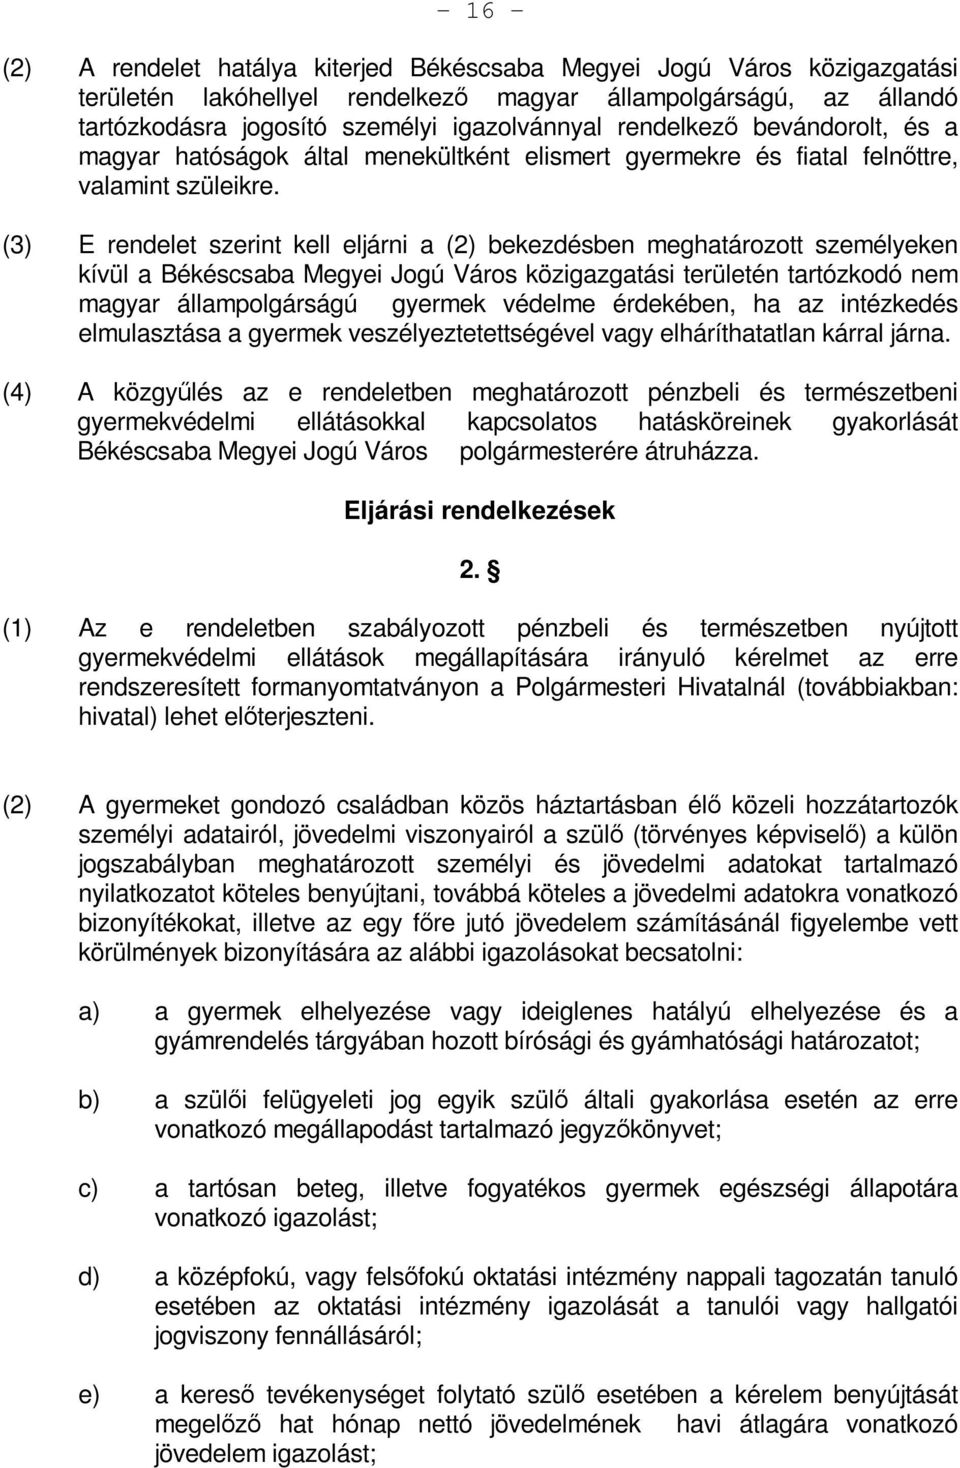 (3) E rendelet szerint kell eljárni a (2) bekezdésben meghatározott személyeken kívül a Békéscsaba Megyei Jogú Város közigazgatási területén tartózkodó nem magyar állampolgárságú gyermek védelme